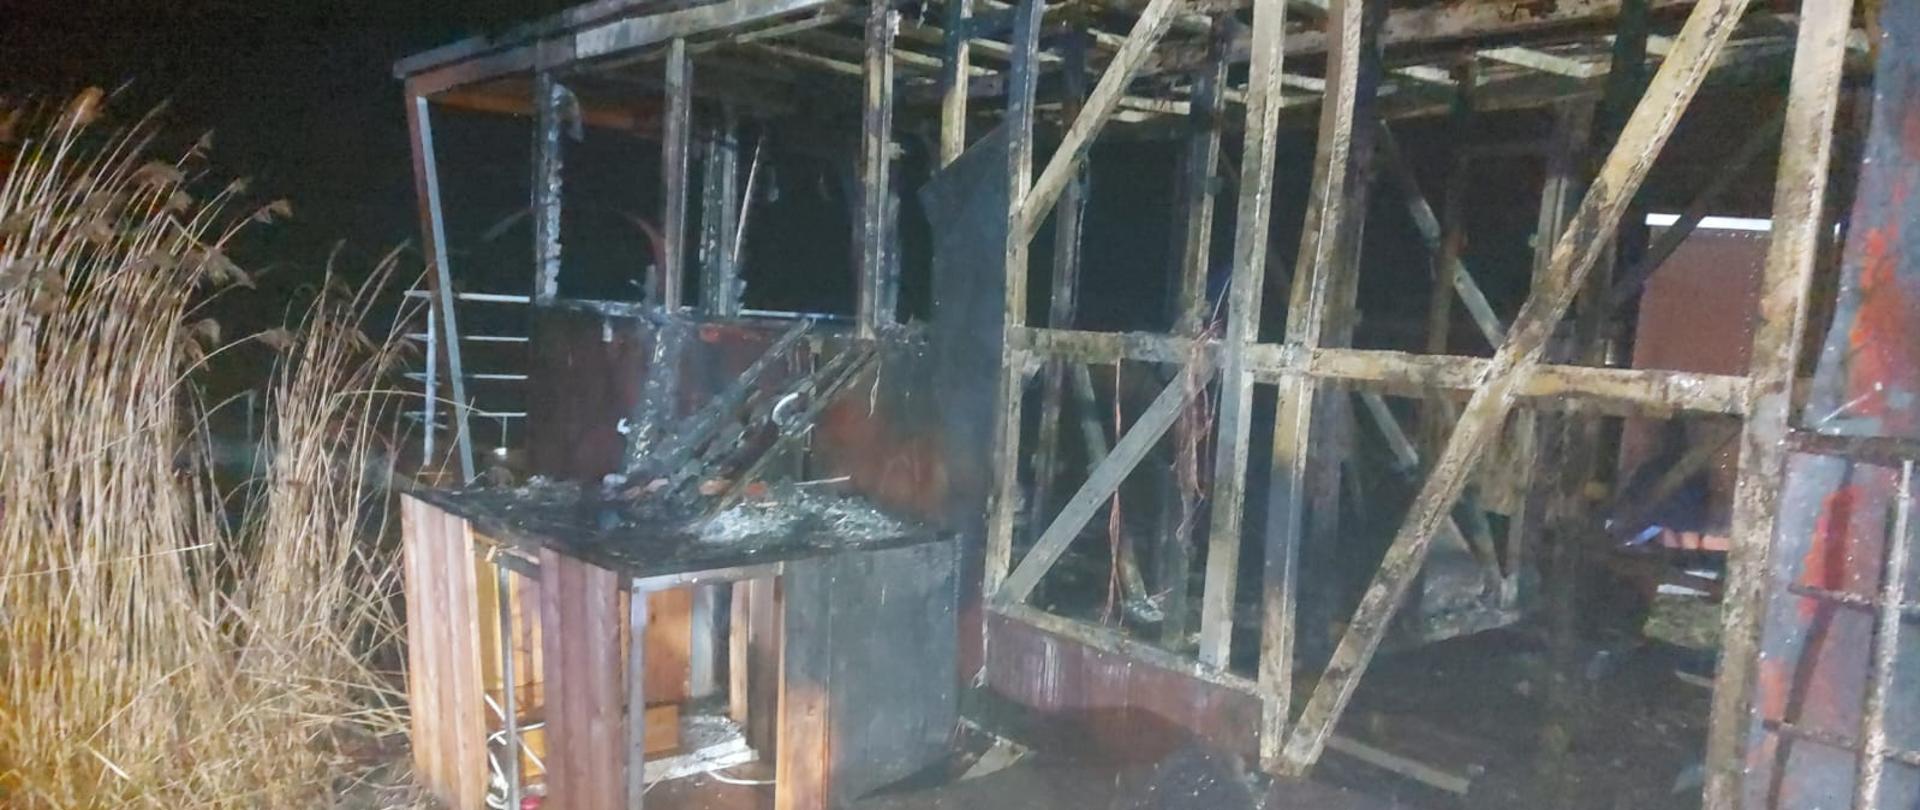 Zdjęcie przedstawia spalony domek pływający. Został sam szkielet budynku. 